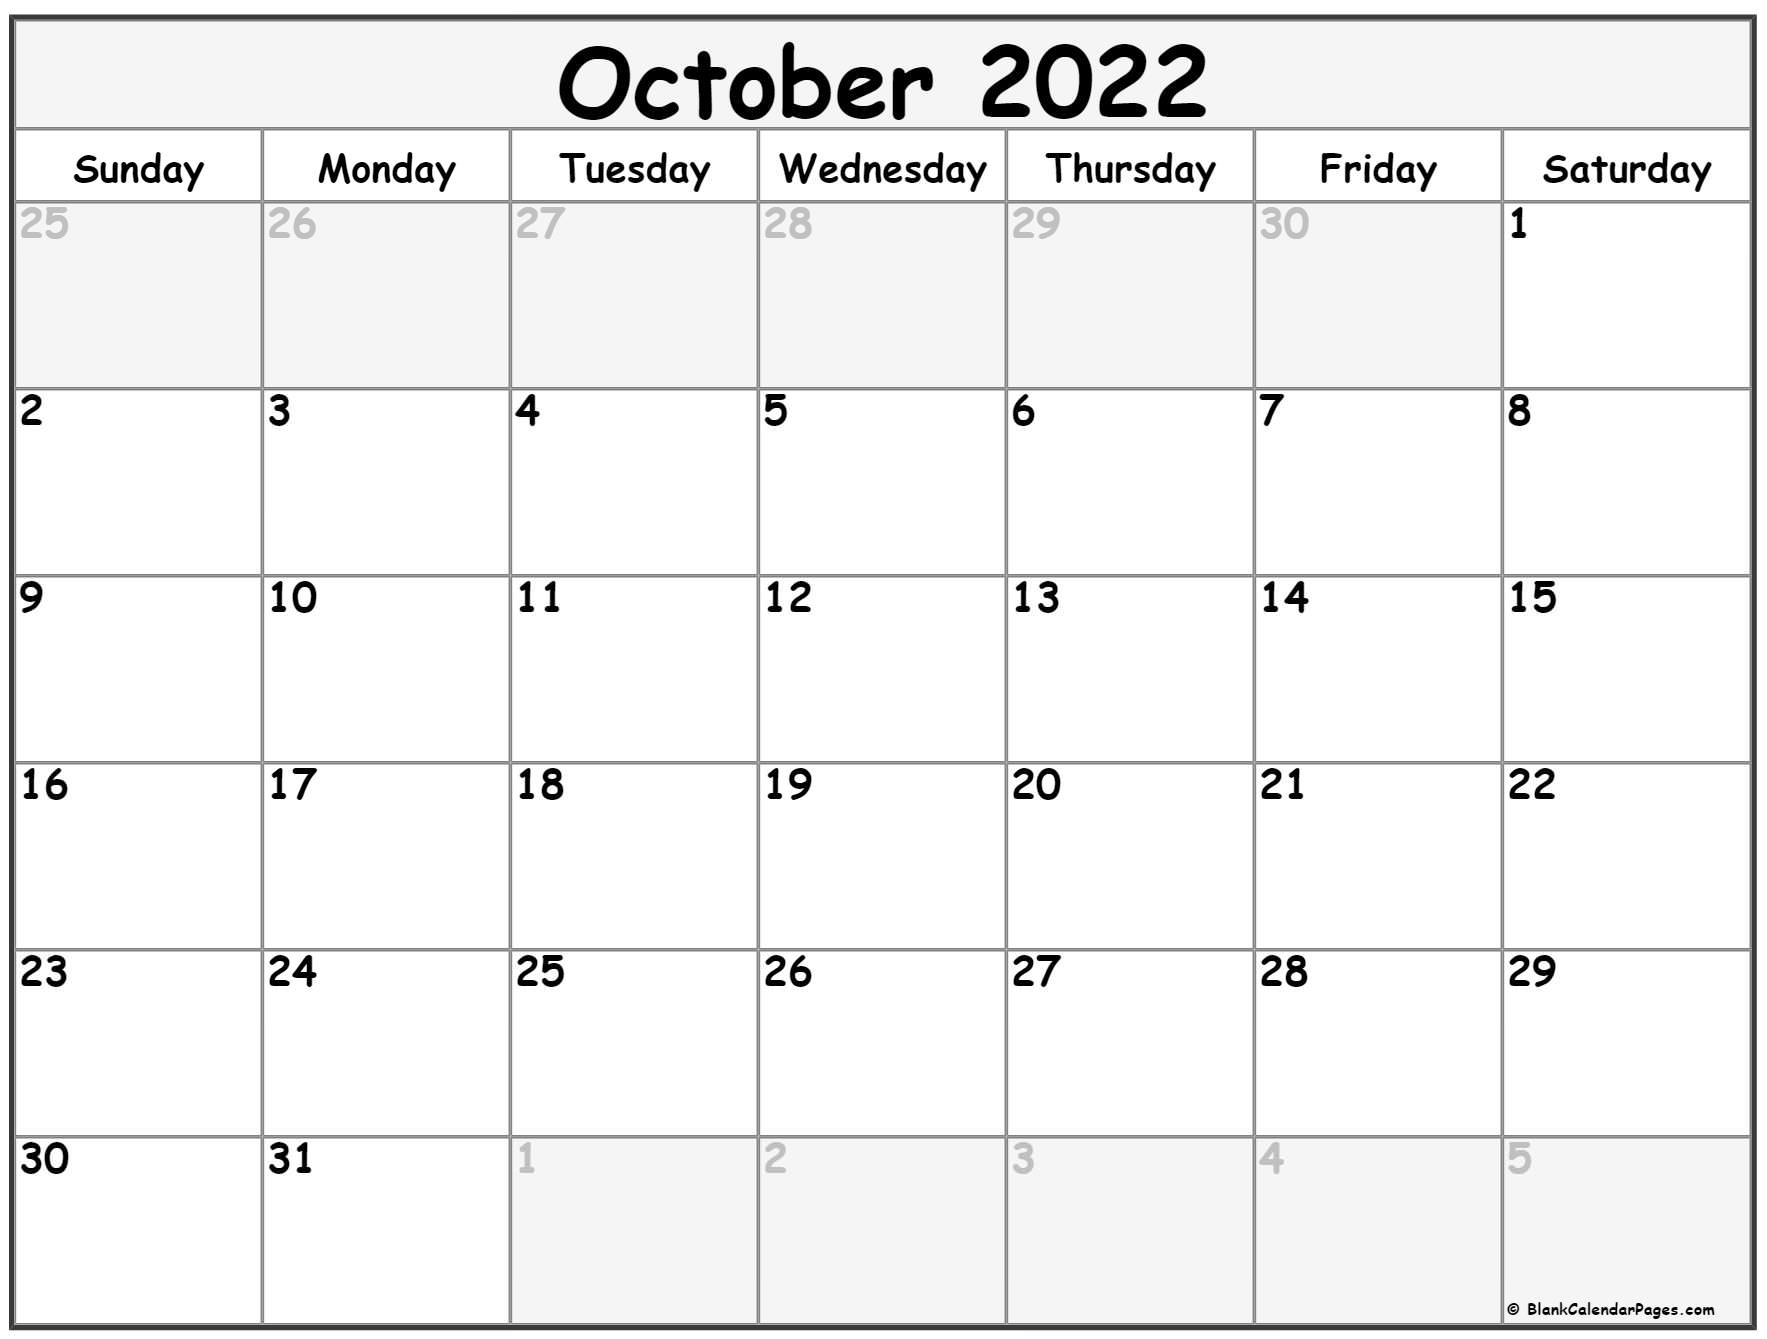 October 2022 Calendar | Free Printable Calendar Templates